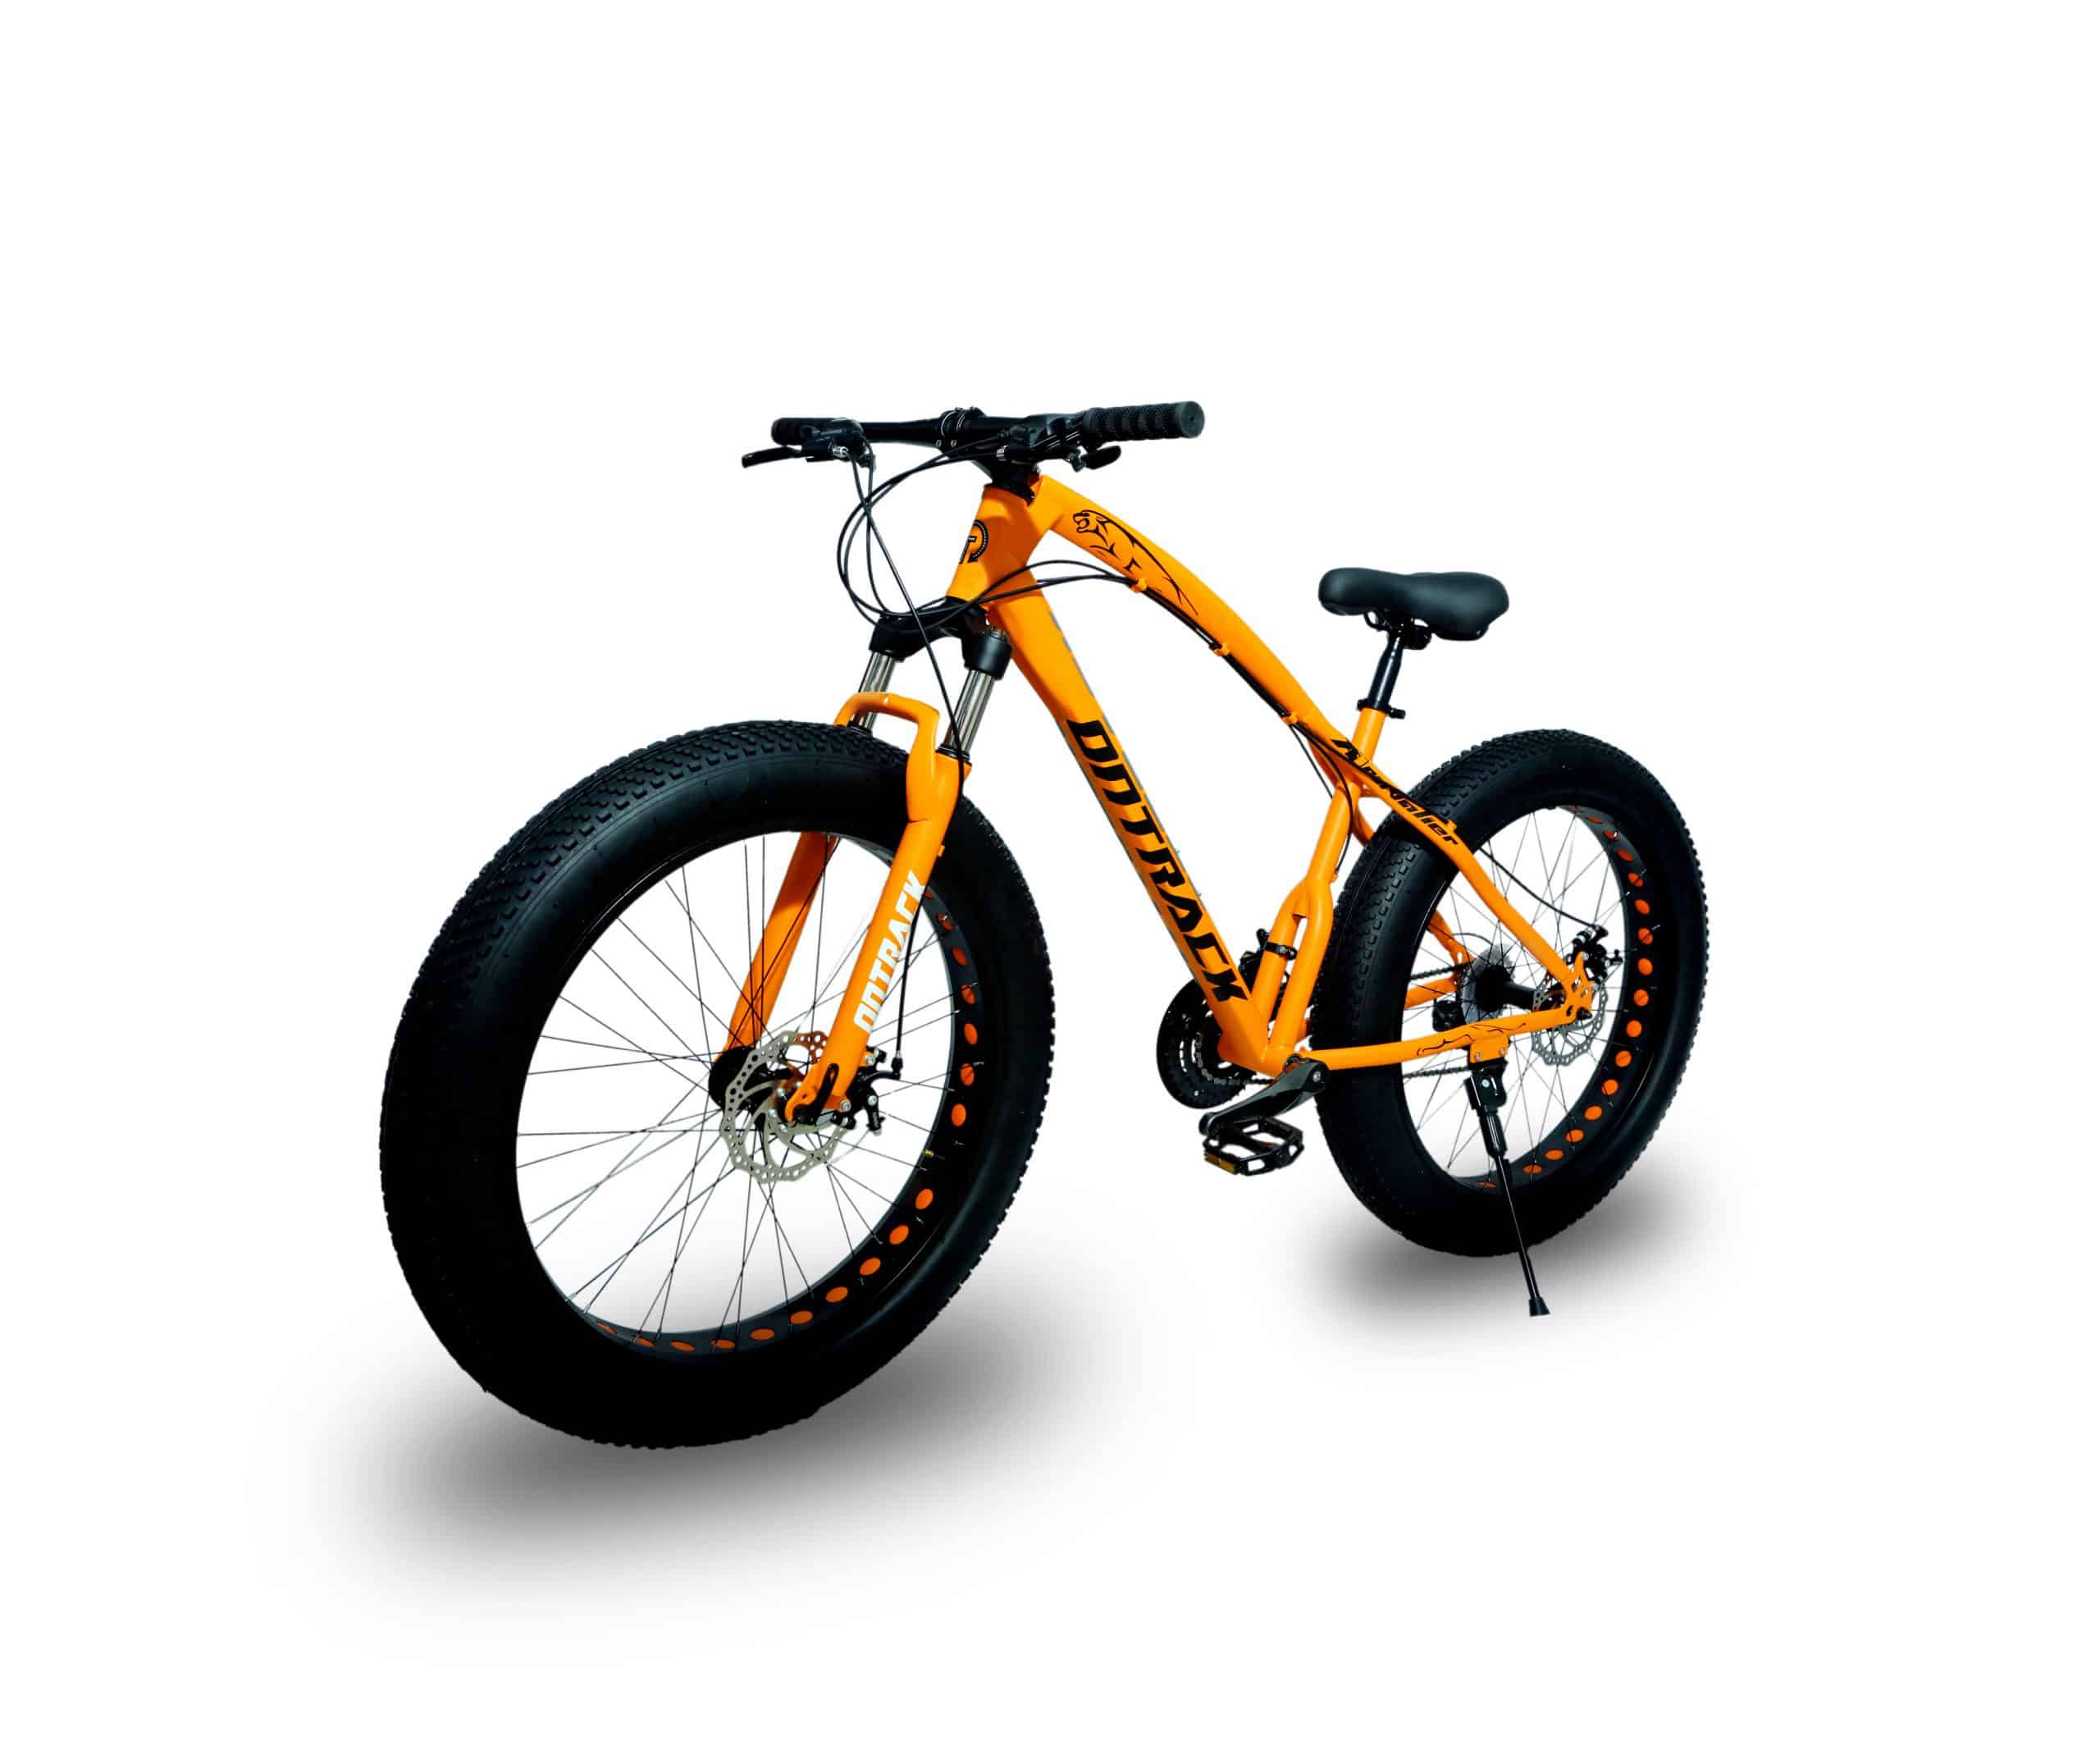 Jaguar Frame Ontrack Cycle Orange Fat Bike 2019 Model | Ontrack